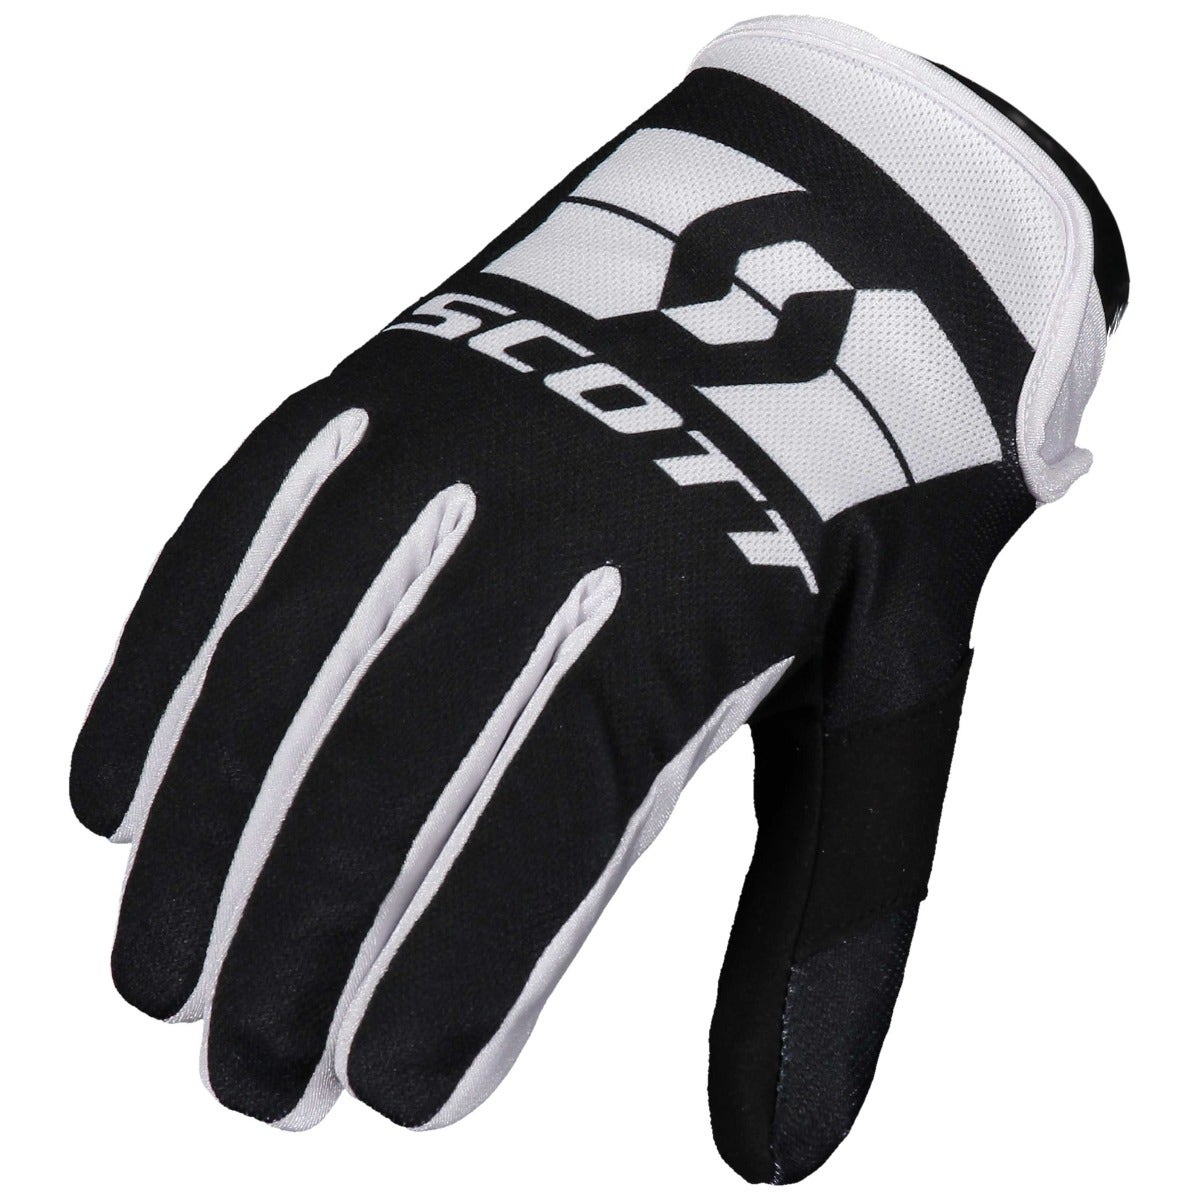 Scott 250 Swap Glove Black/White